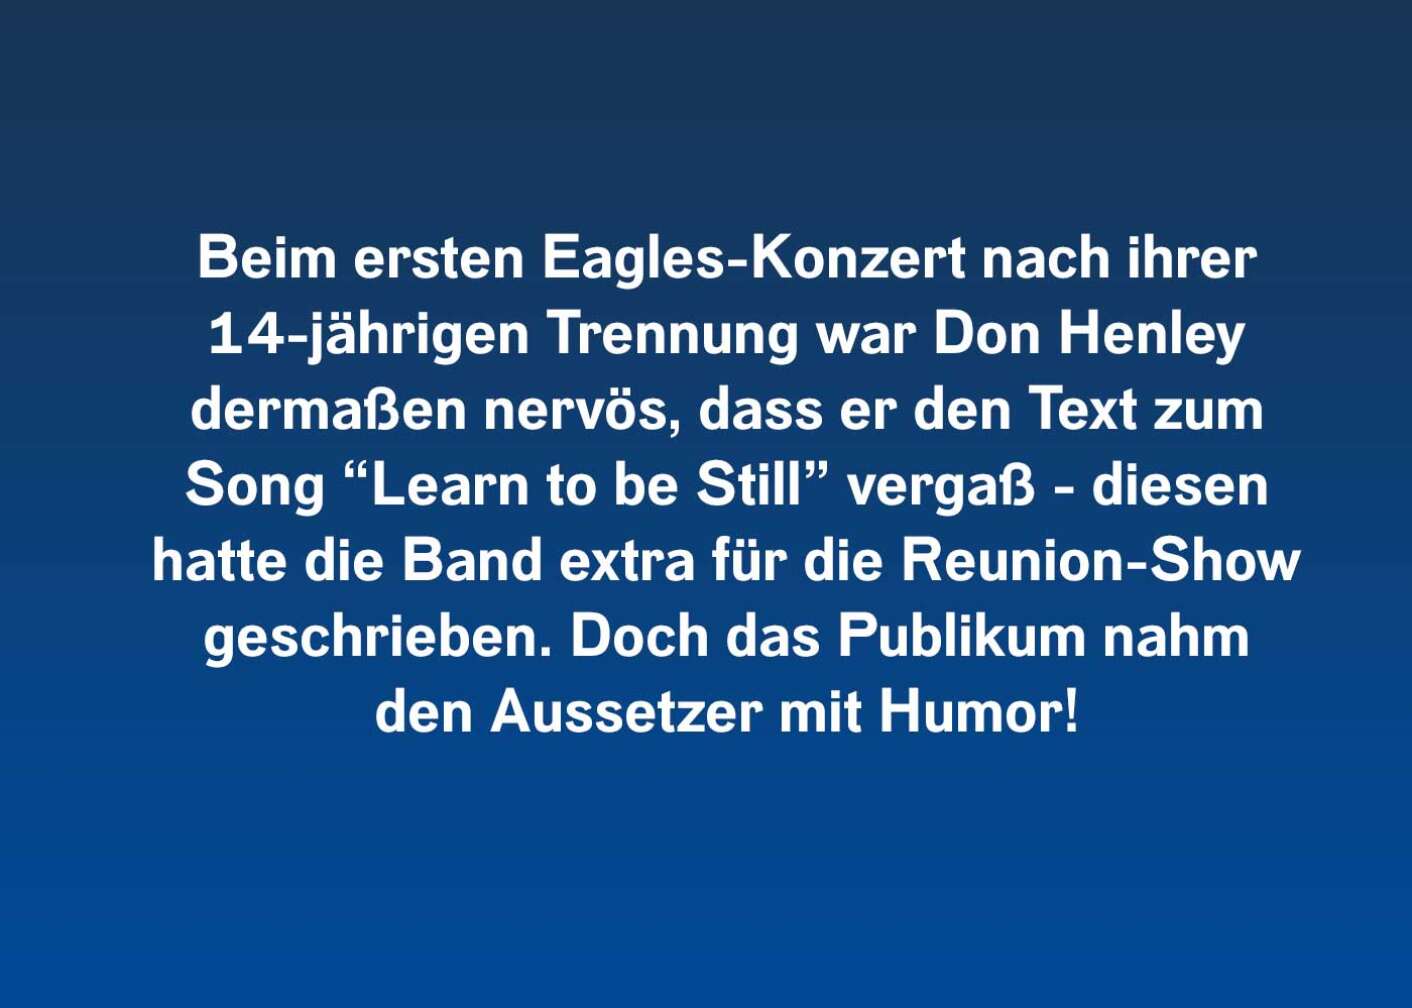 10 Fakten über Don Henley (ersten Eagles-Konzert)